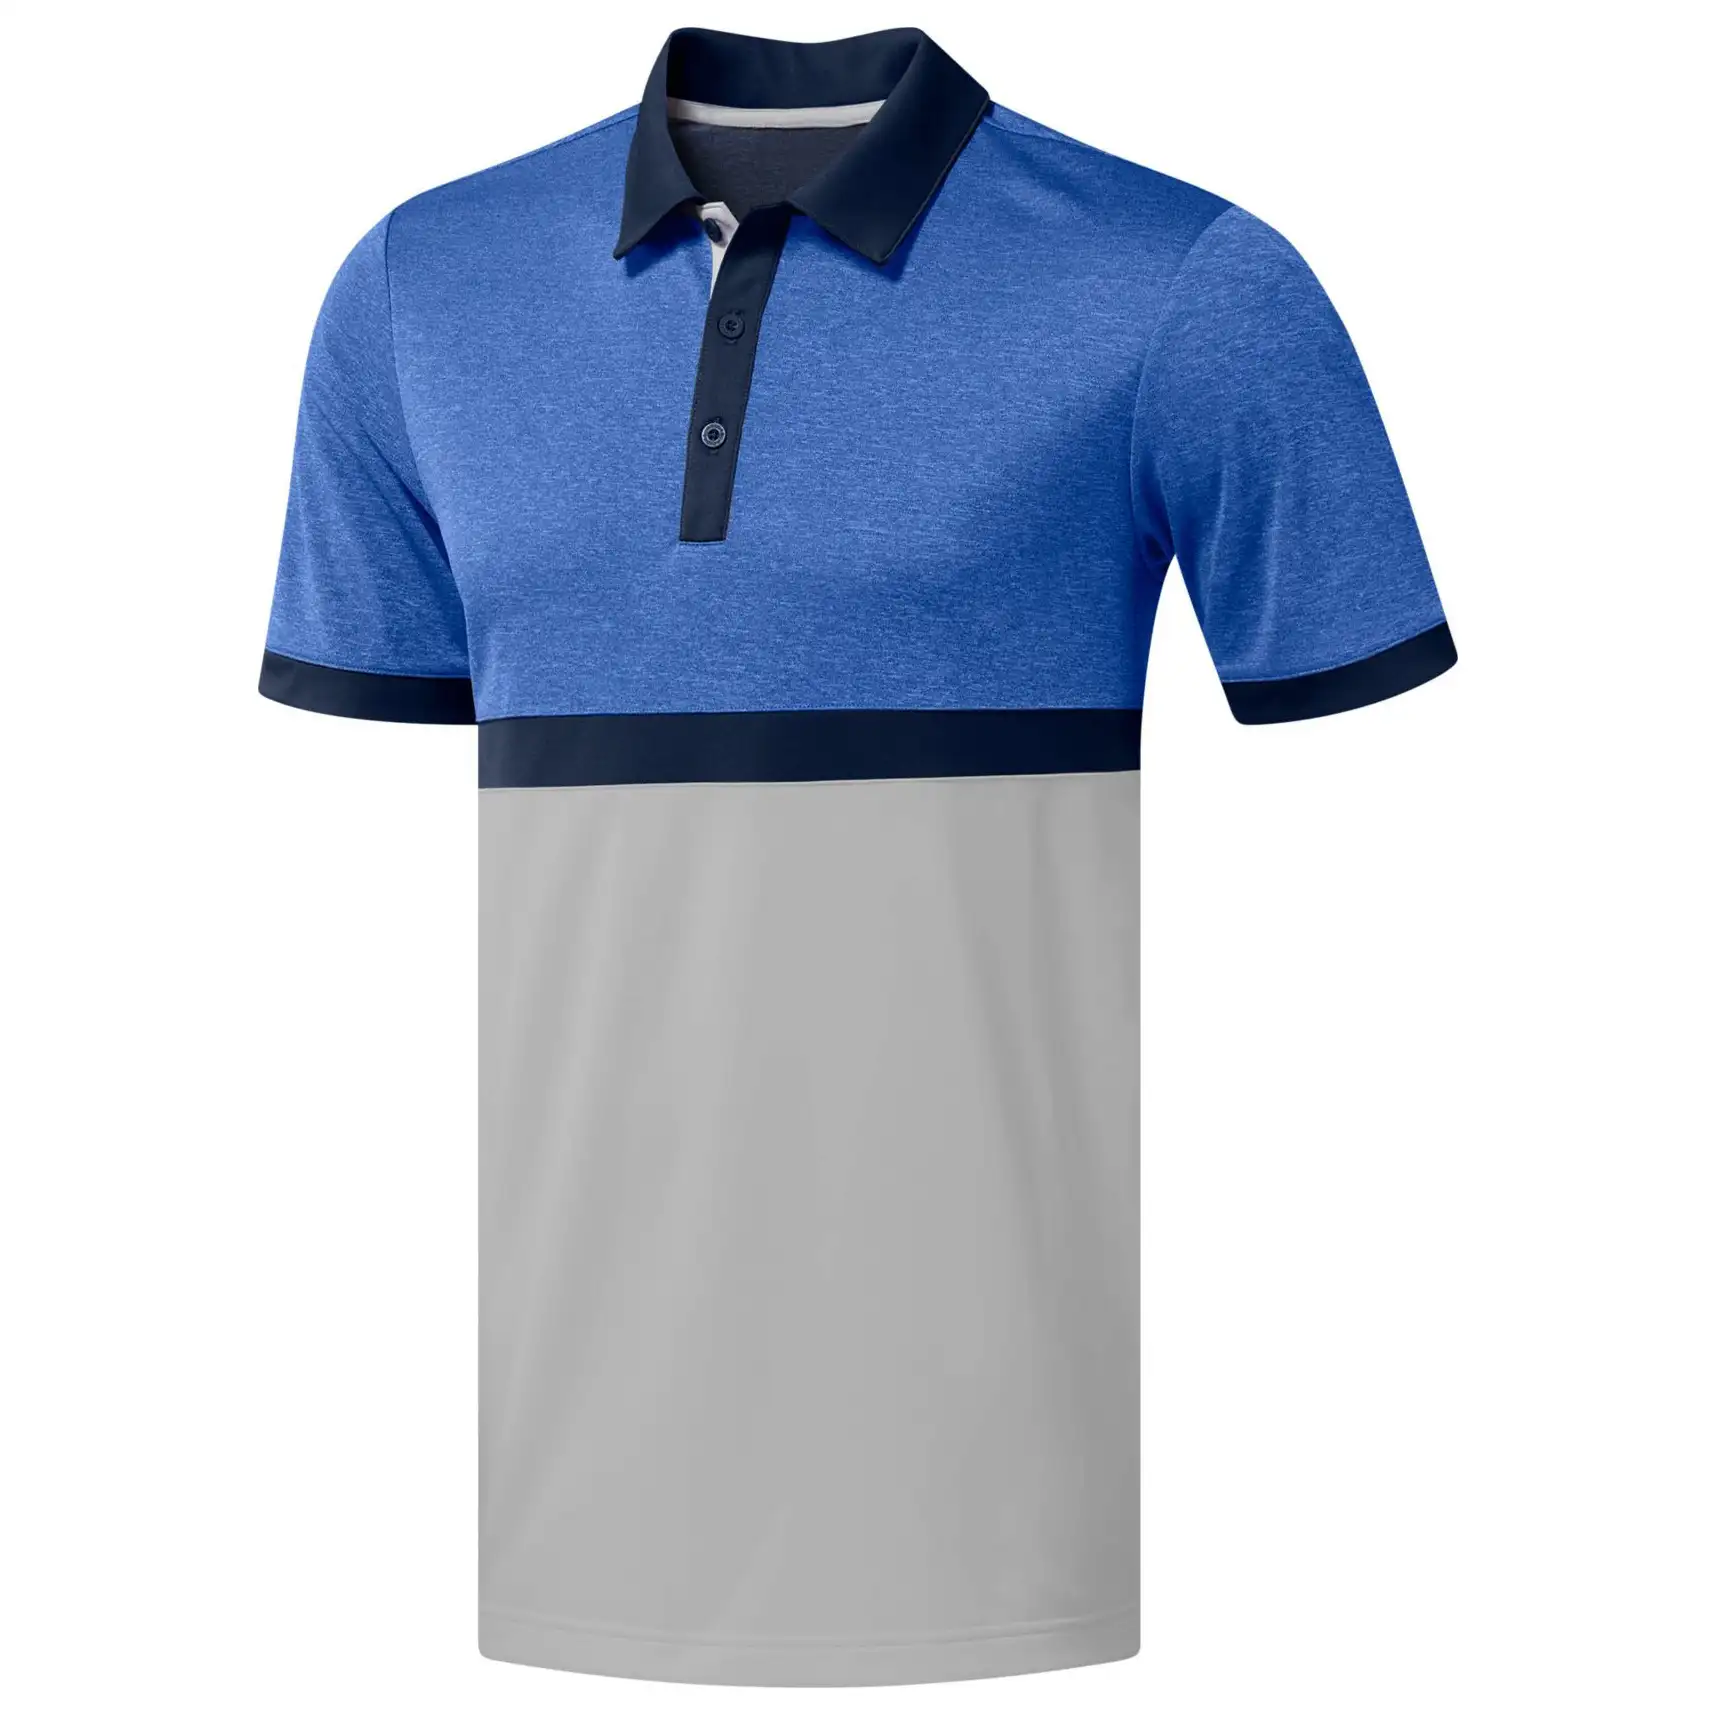 Nuevo diseño de los hombres de la mitad de mangas de dos tonos de la marca de nombre de secado rápido rendimiento Golf Polo T camisas